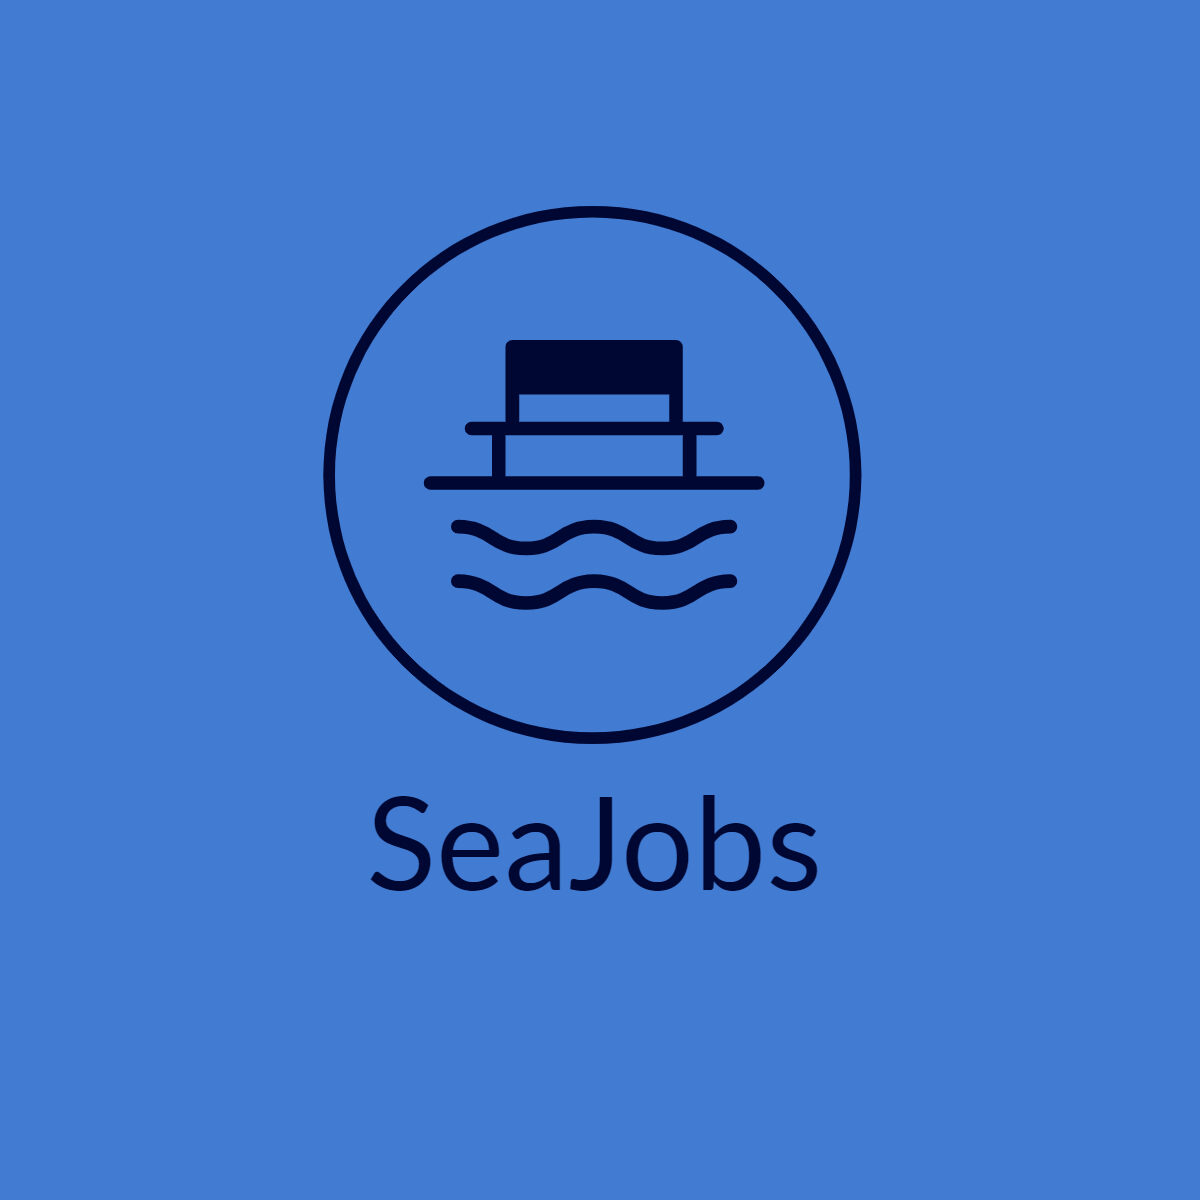 Sea Jobs